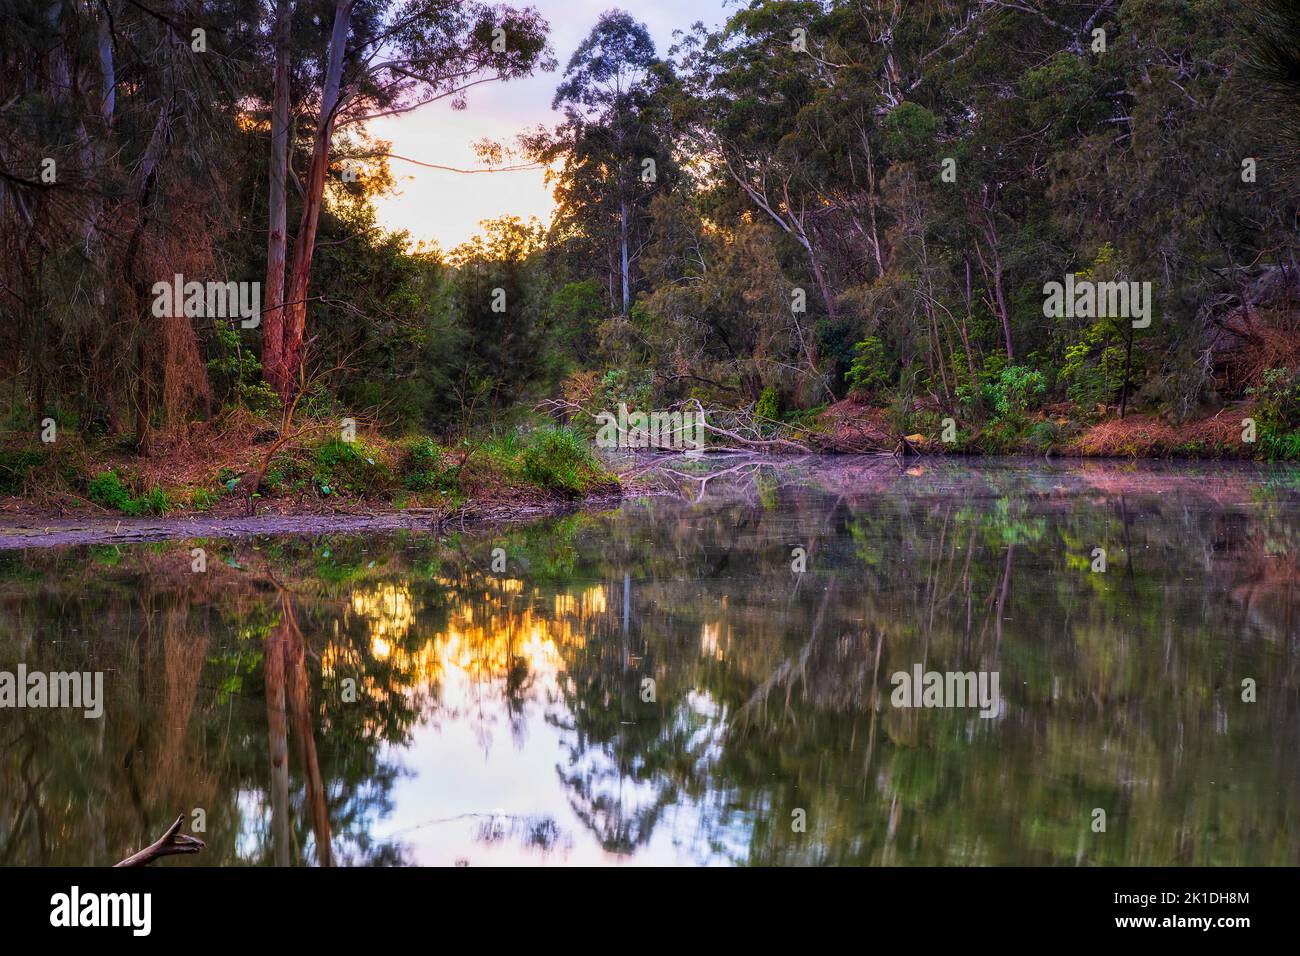 Sumérjase en las aguas del río Lane Cove en el Parque Nacional de Sídney, Australia, amanecer en el paisaje natural. Foto de stock